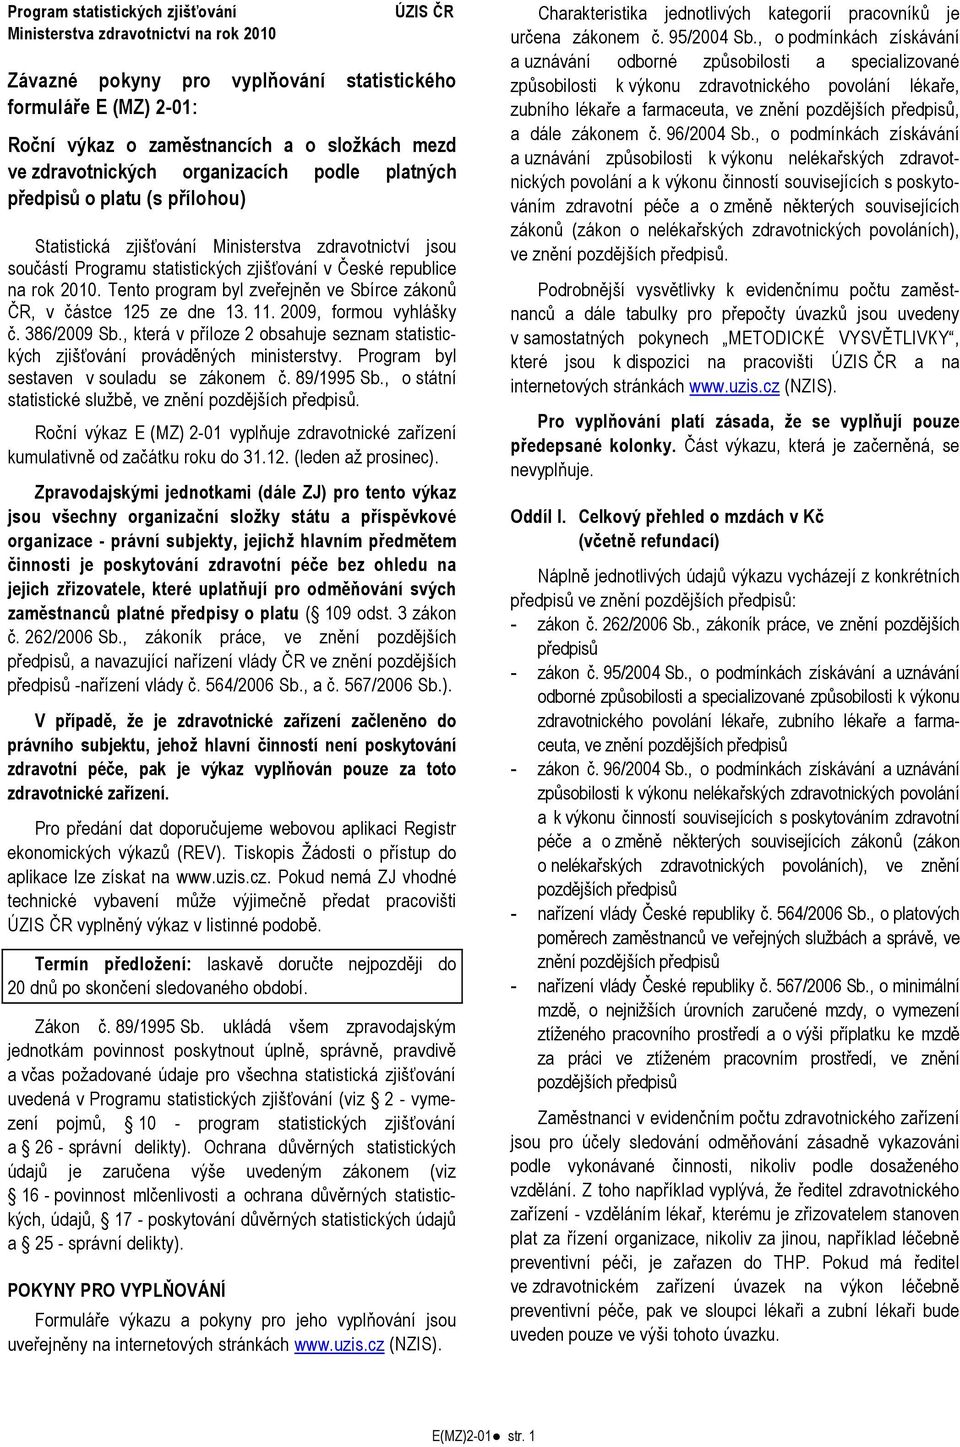 Tento program byl zveřejněn ve Sbírce zákonů ČR, v částce 125 ze dne 13. 11. 2009, formou vyhlášky č. 386/2009 Sb., která v příloze 2 obsahuje seznam statistických zjišťování prováděných ministerstvy.